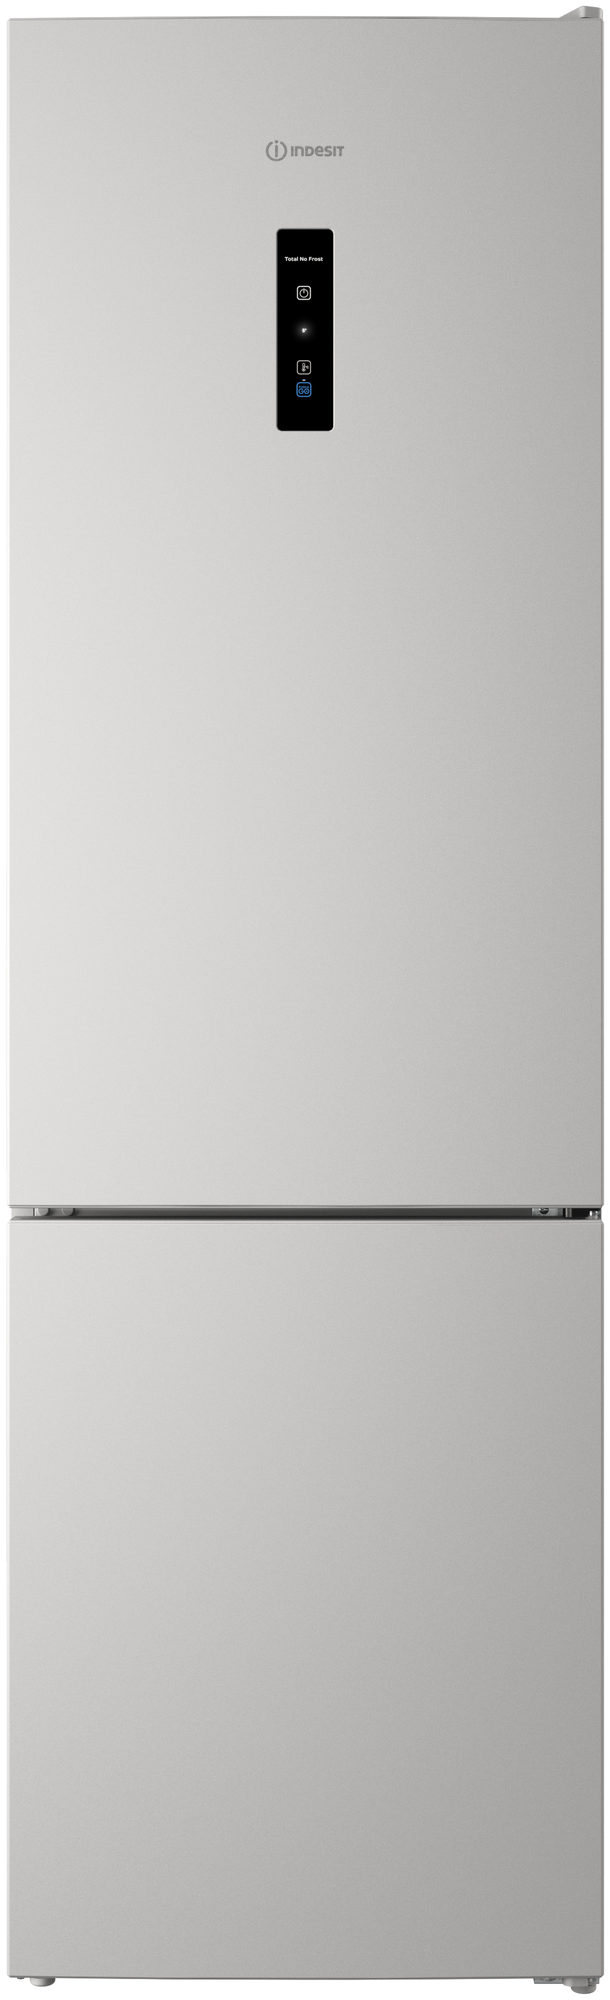 двухкамерный холодильник Indesit ITR 5200 W